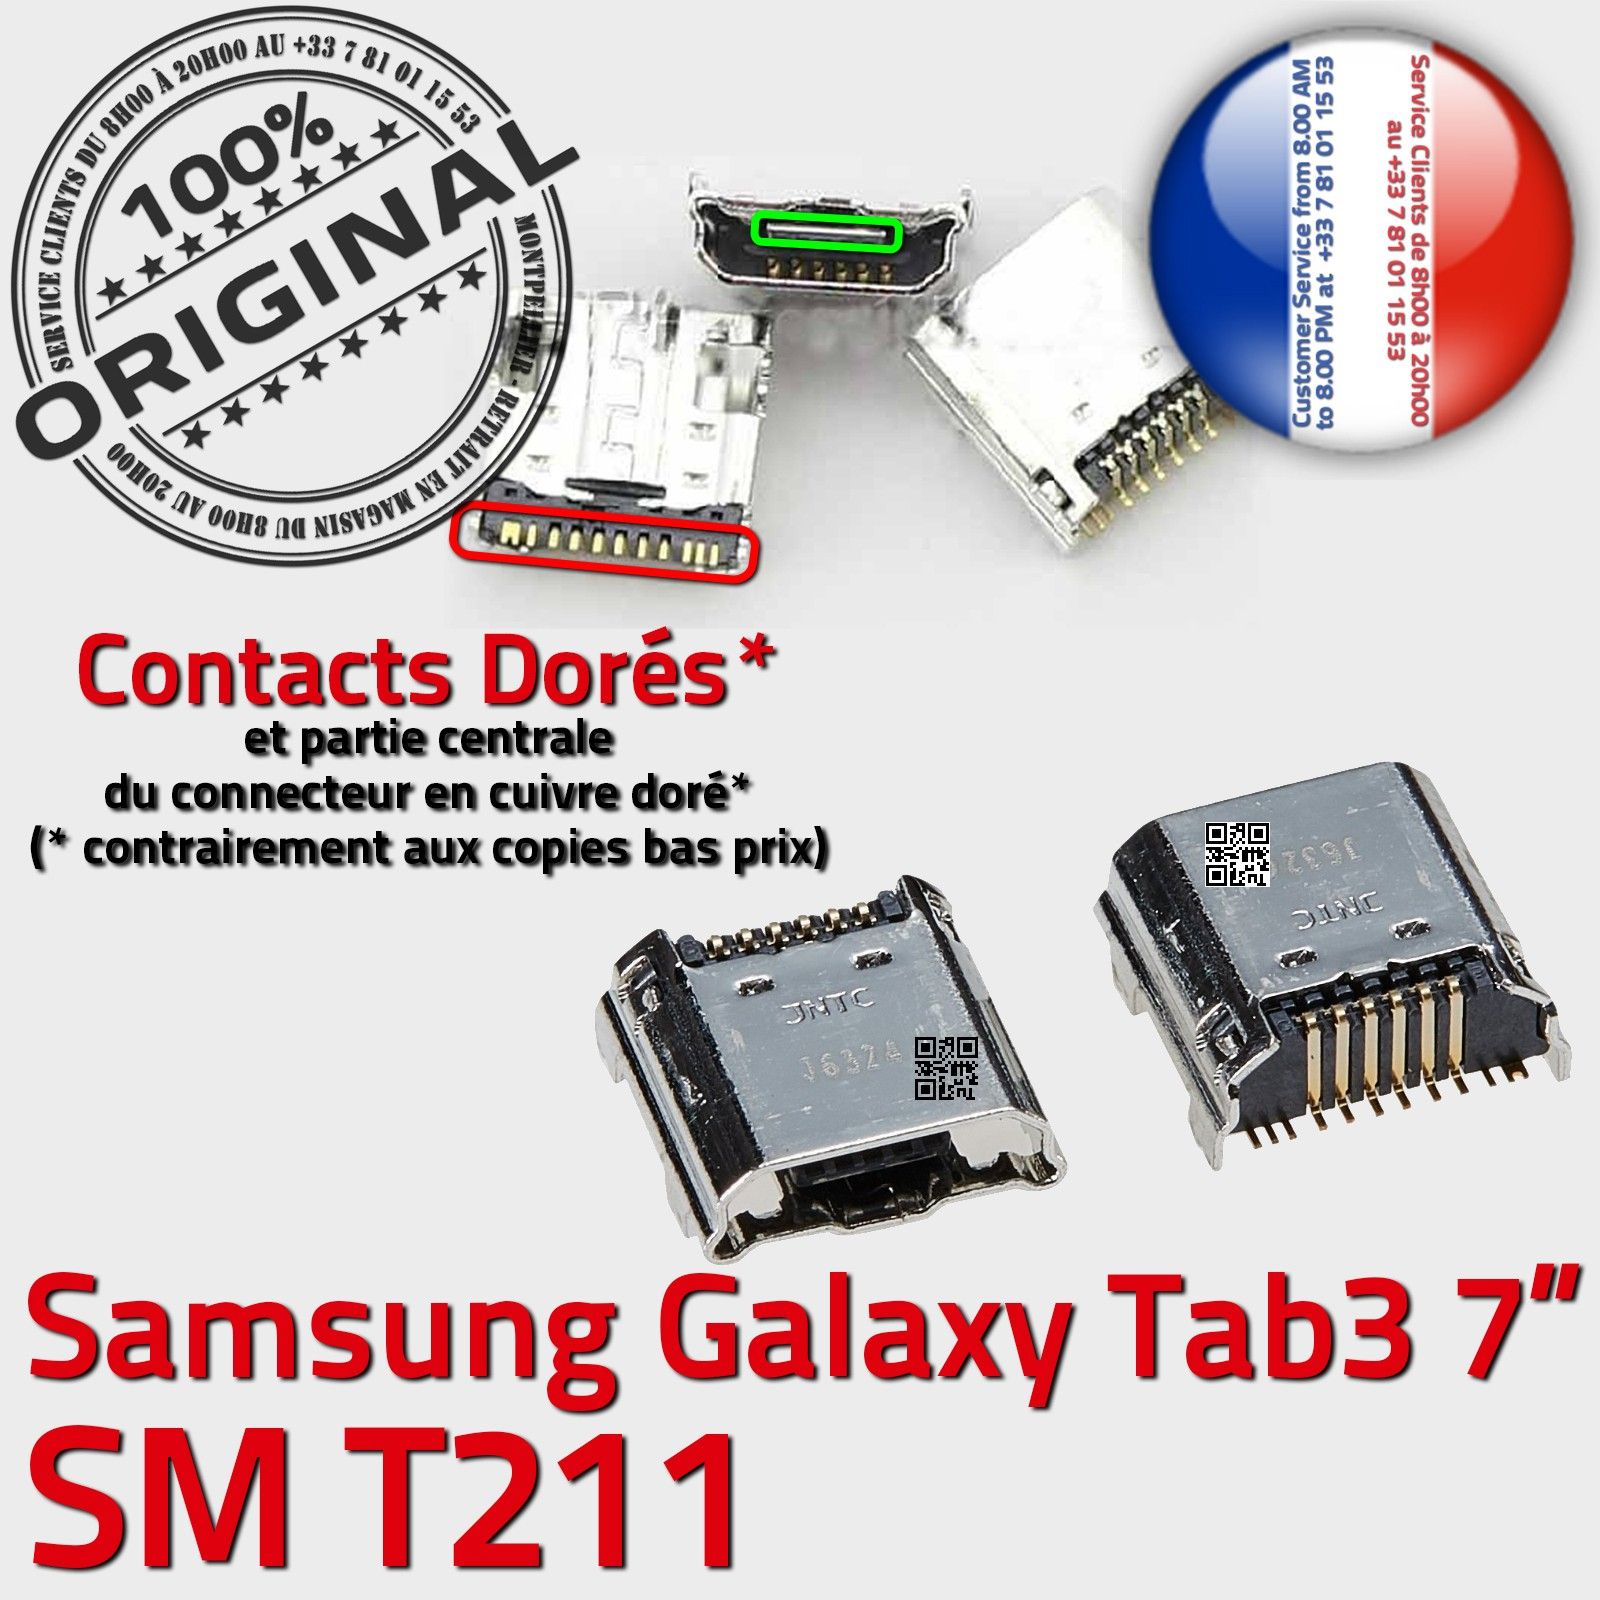 ORIGINAL Samsung Galaxy TAB 3 SM T211 Connecteur de charge à souder Micro USB Pins Dorés Dock Prise Connector Chargeur 7 inch